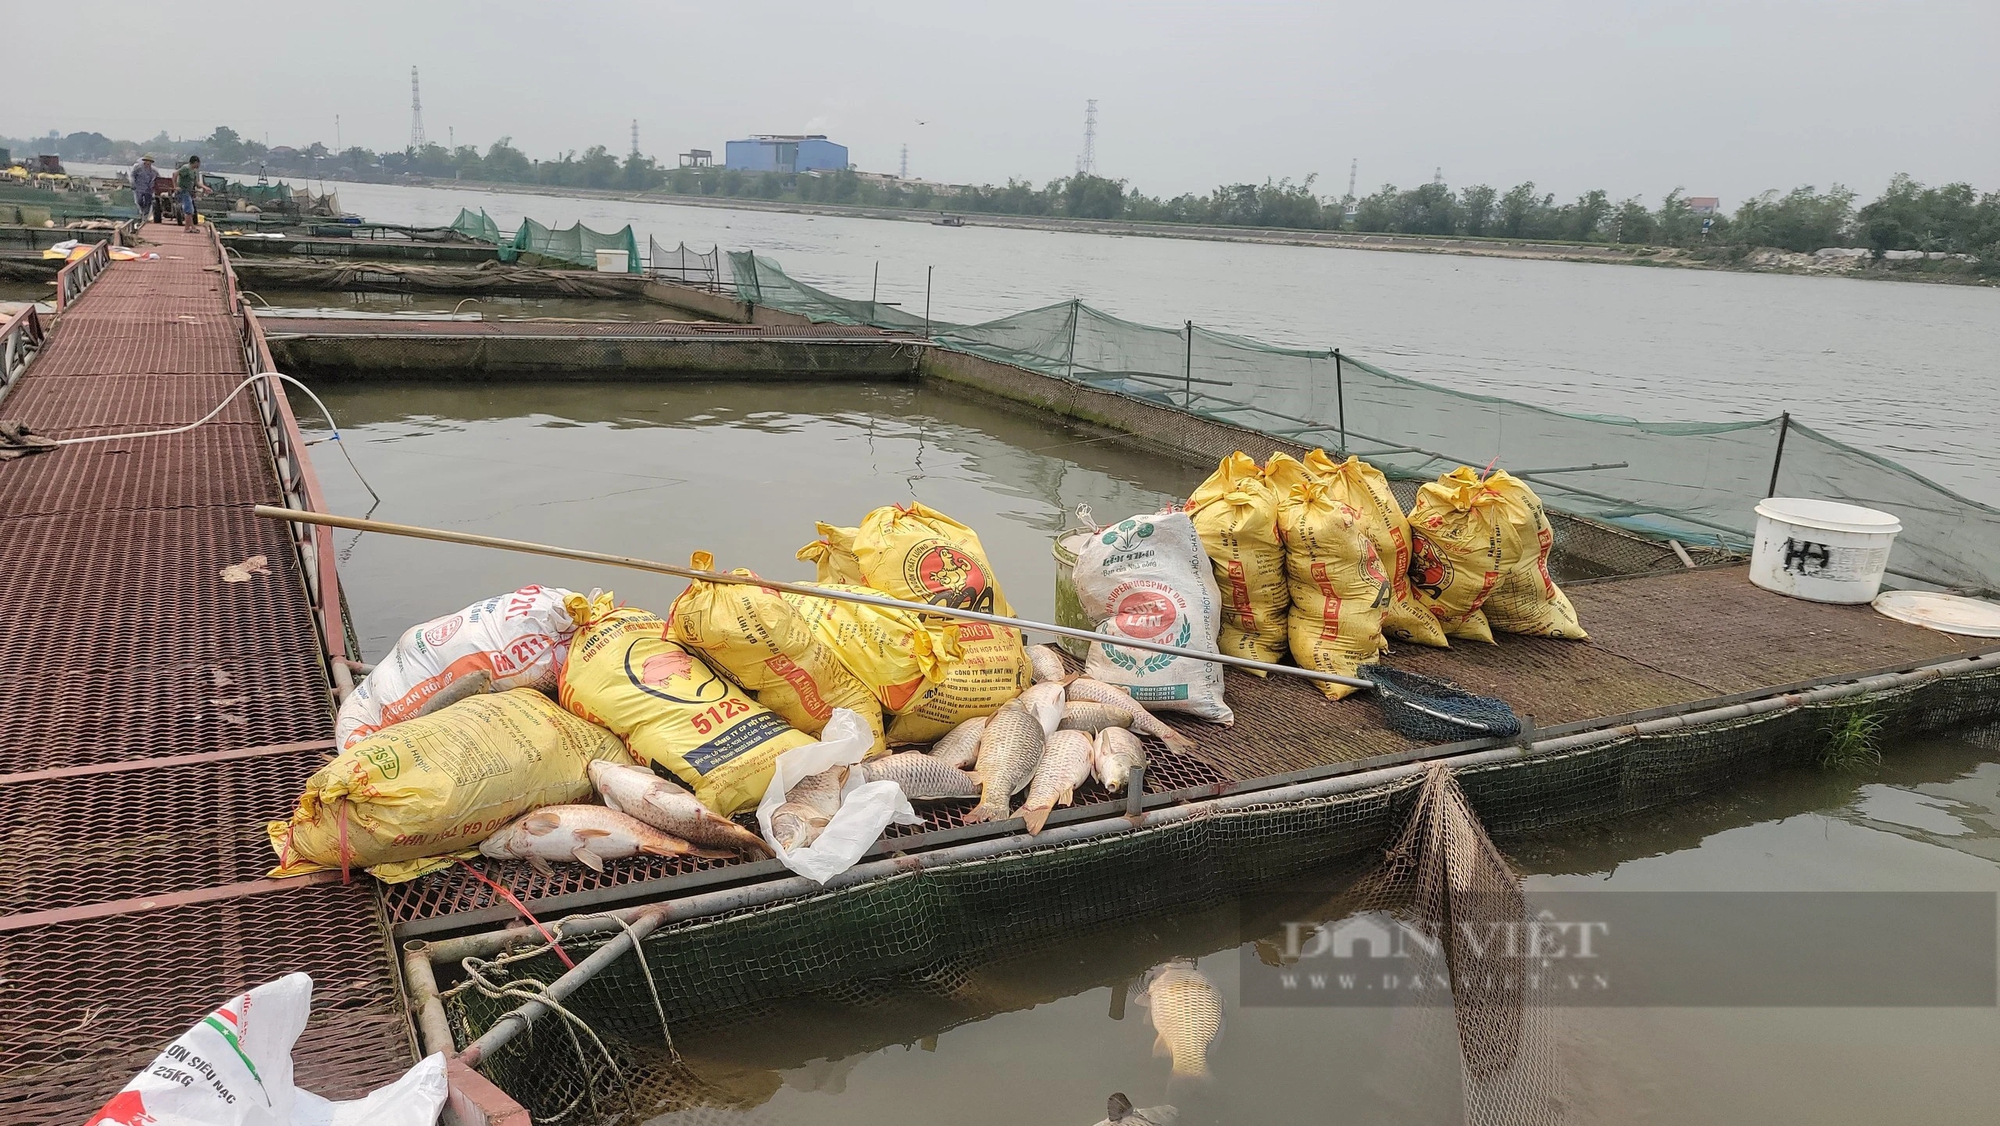 Trăm tấn cá chết bất thường trên sông Thái Bình ở TP Hải Dương, dân buồn hụt hẫng, có nhà "trôi tiền tỷ"- Ảnh 5.